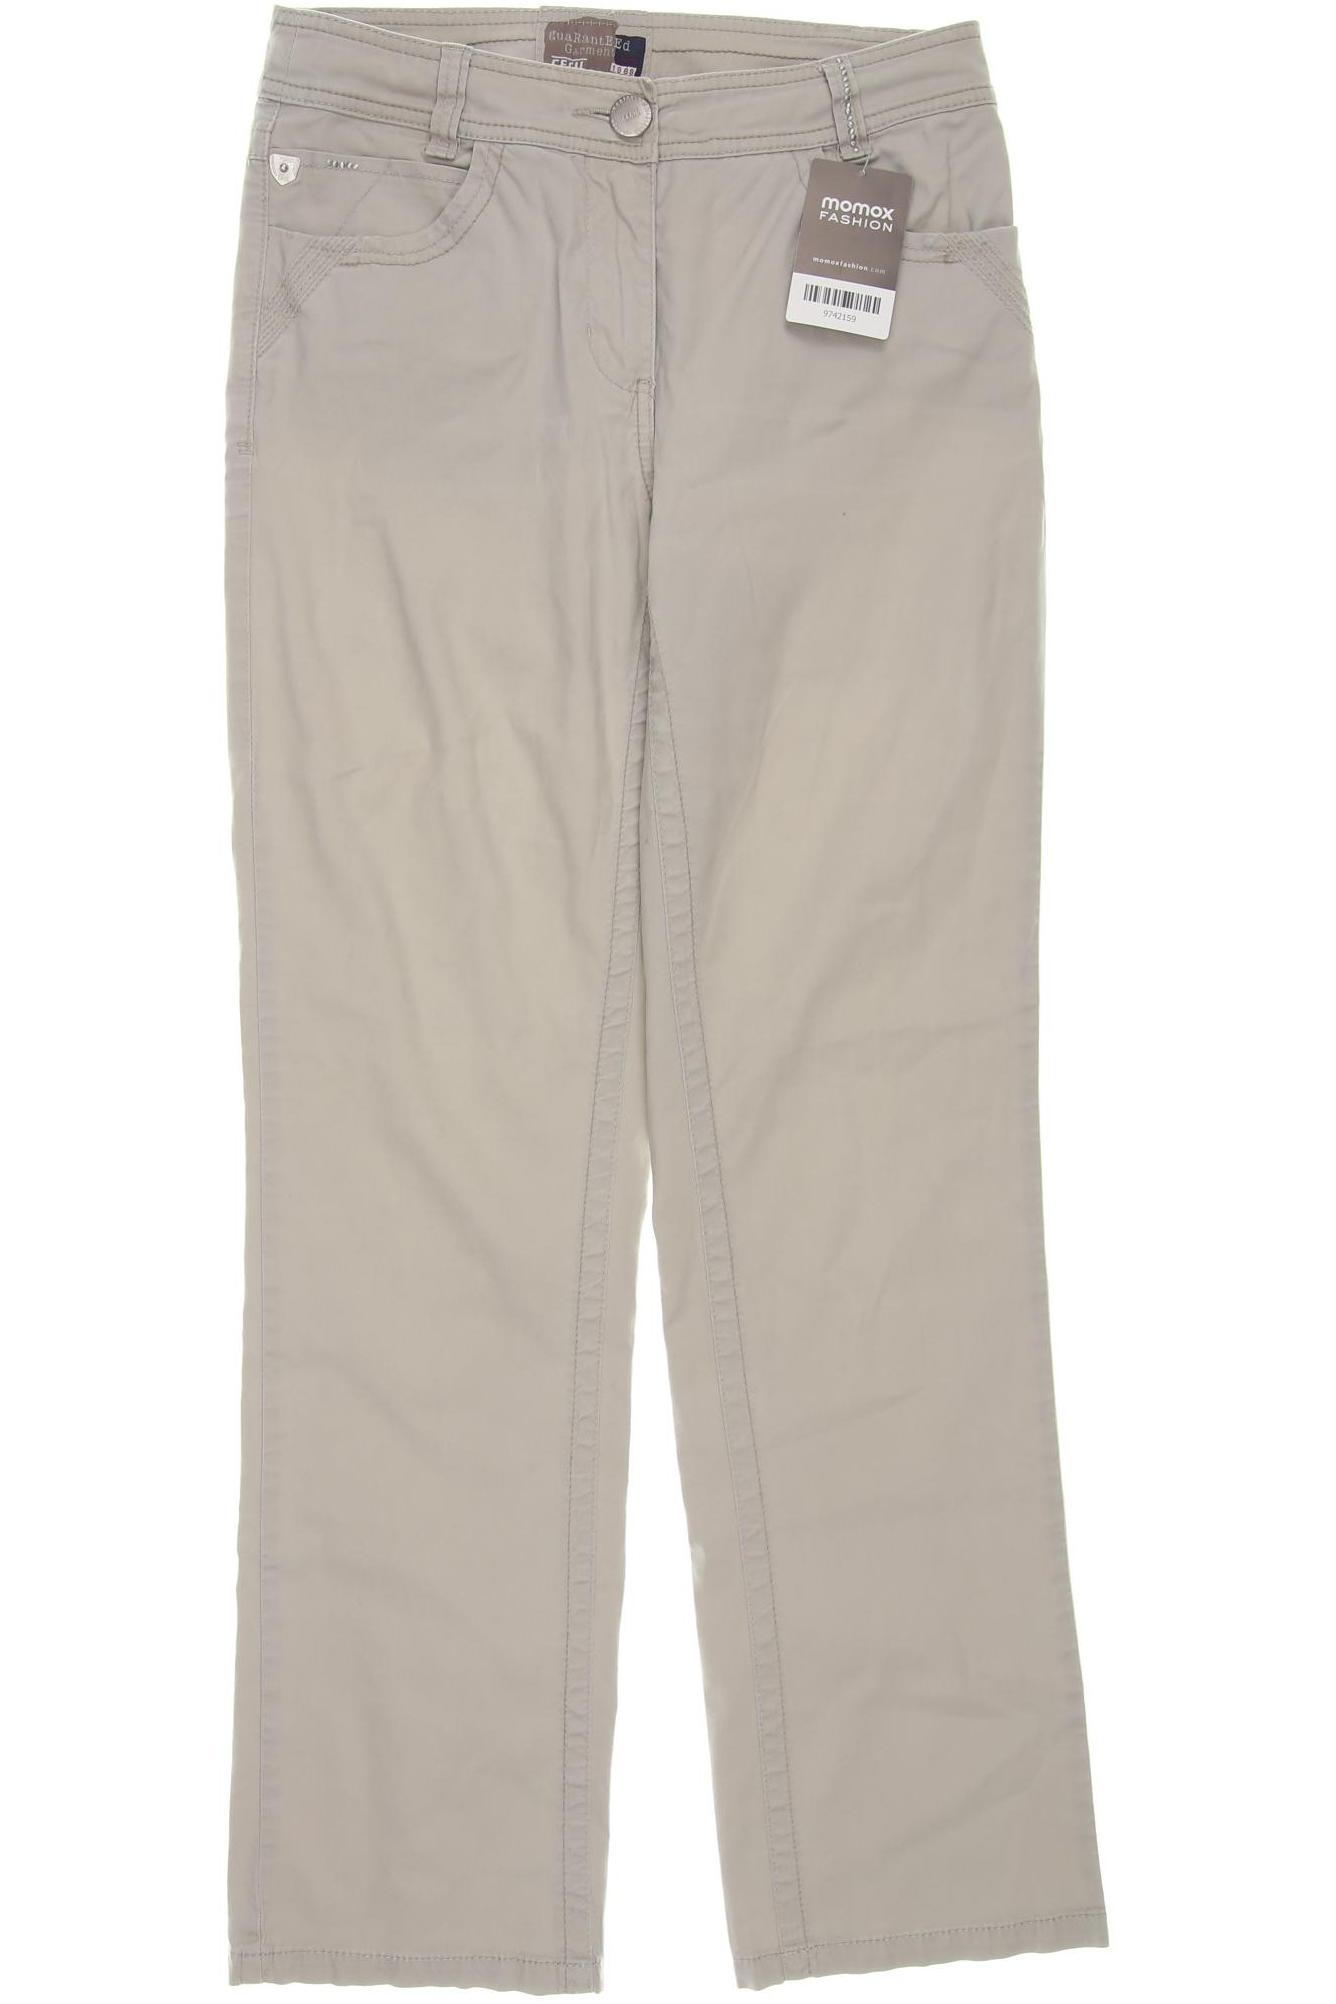 Cecil Damen Jeans, cremeweiß, Gr. 36 von cecil